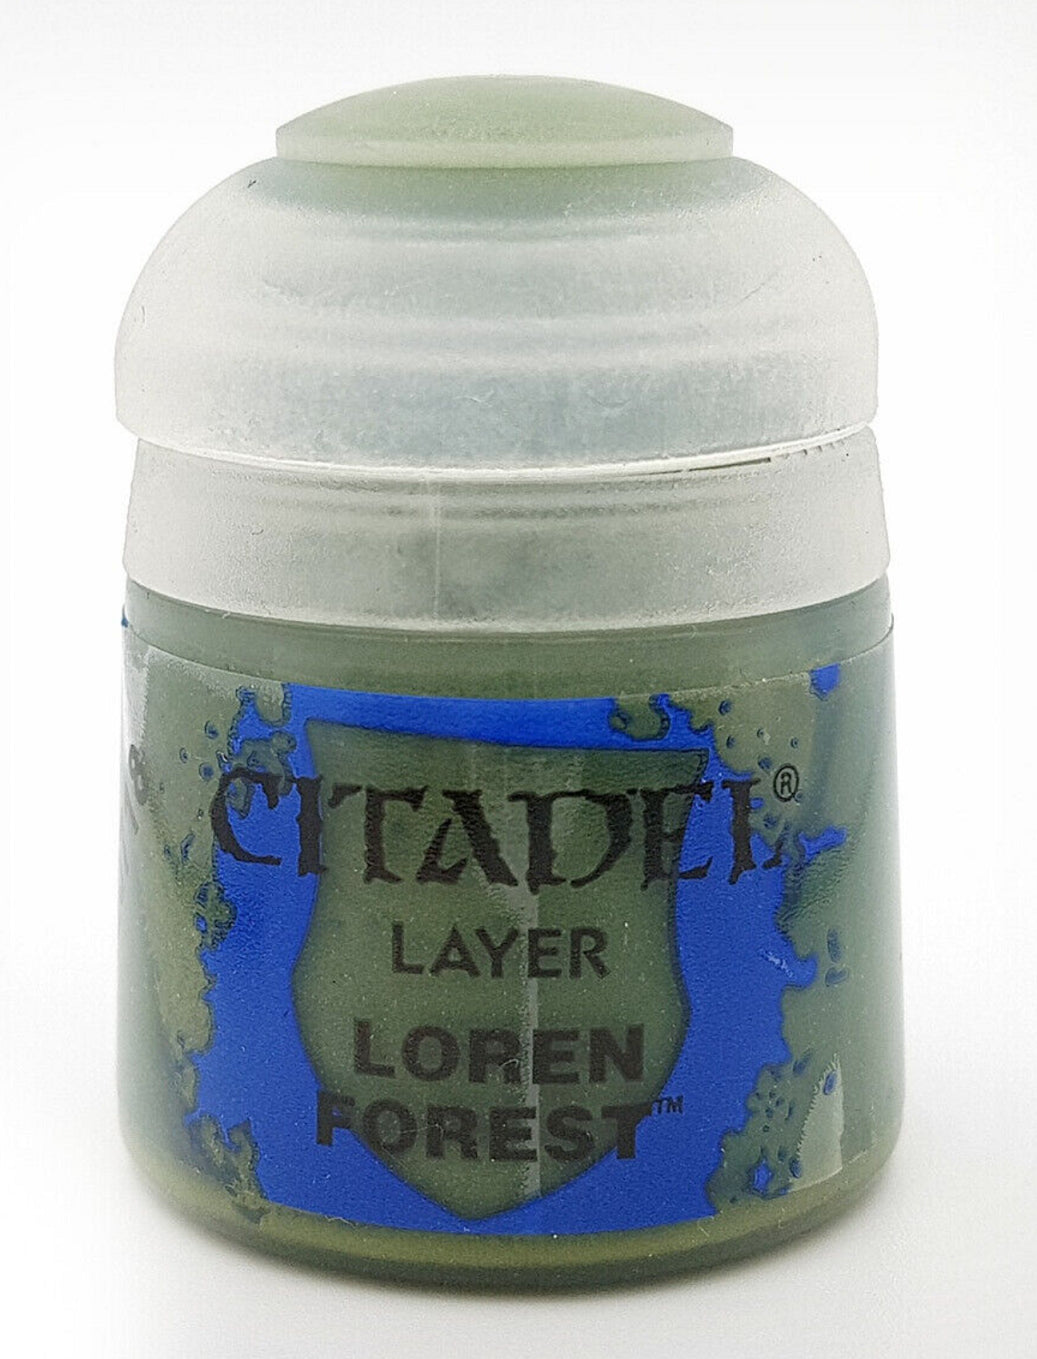 Loren Forest Citadel Paints - Layer- 12ml